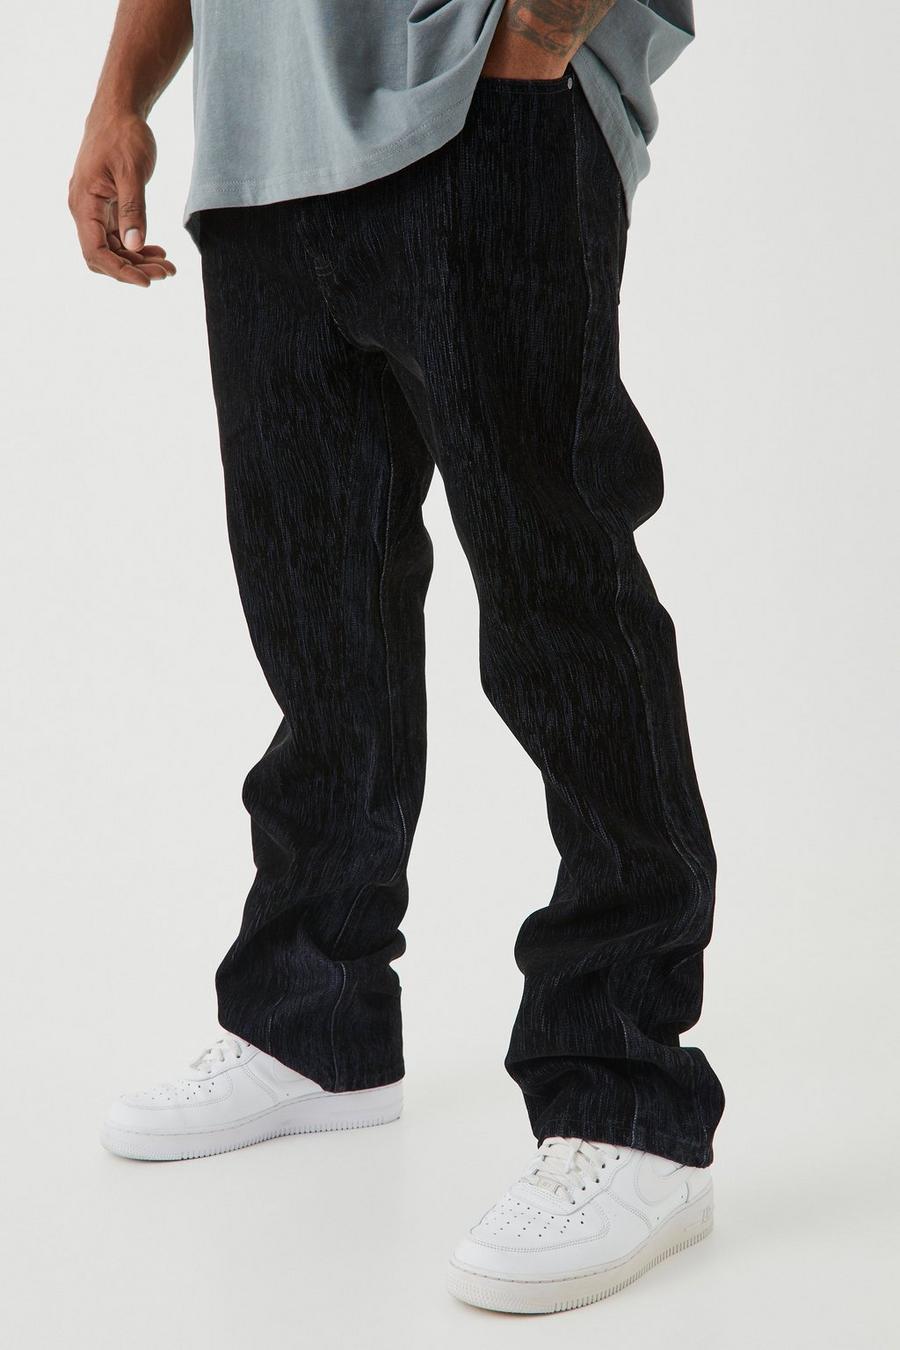 Jeans a zampa Plus Size Slim Fit in denim spazzolato rigido con inserti, True black